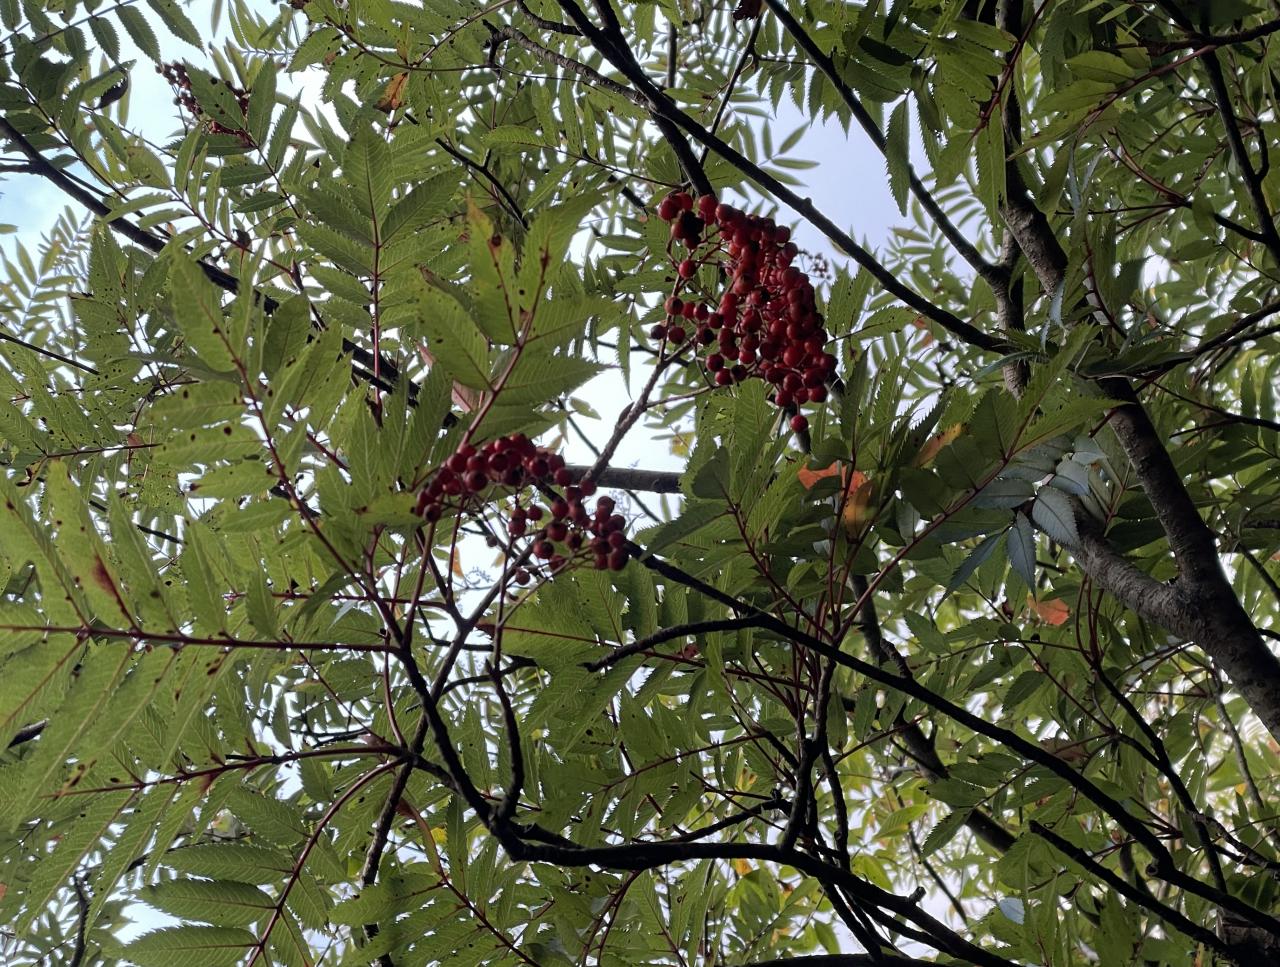 スギを中心とした常緑樹が多い屋久島で、赤い実を付けているナナカマドは数少ない紅葉する植物です。